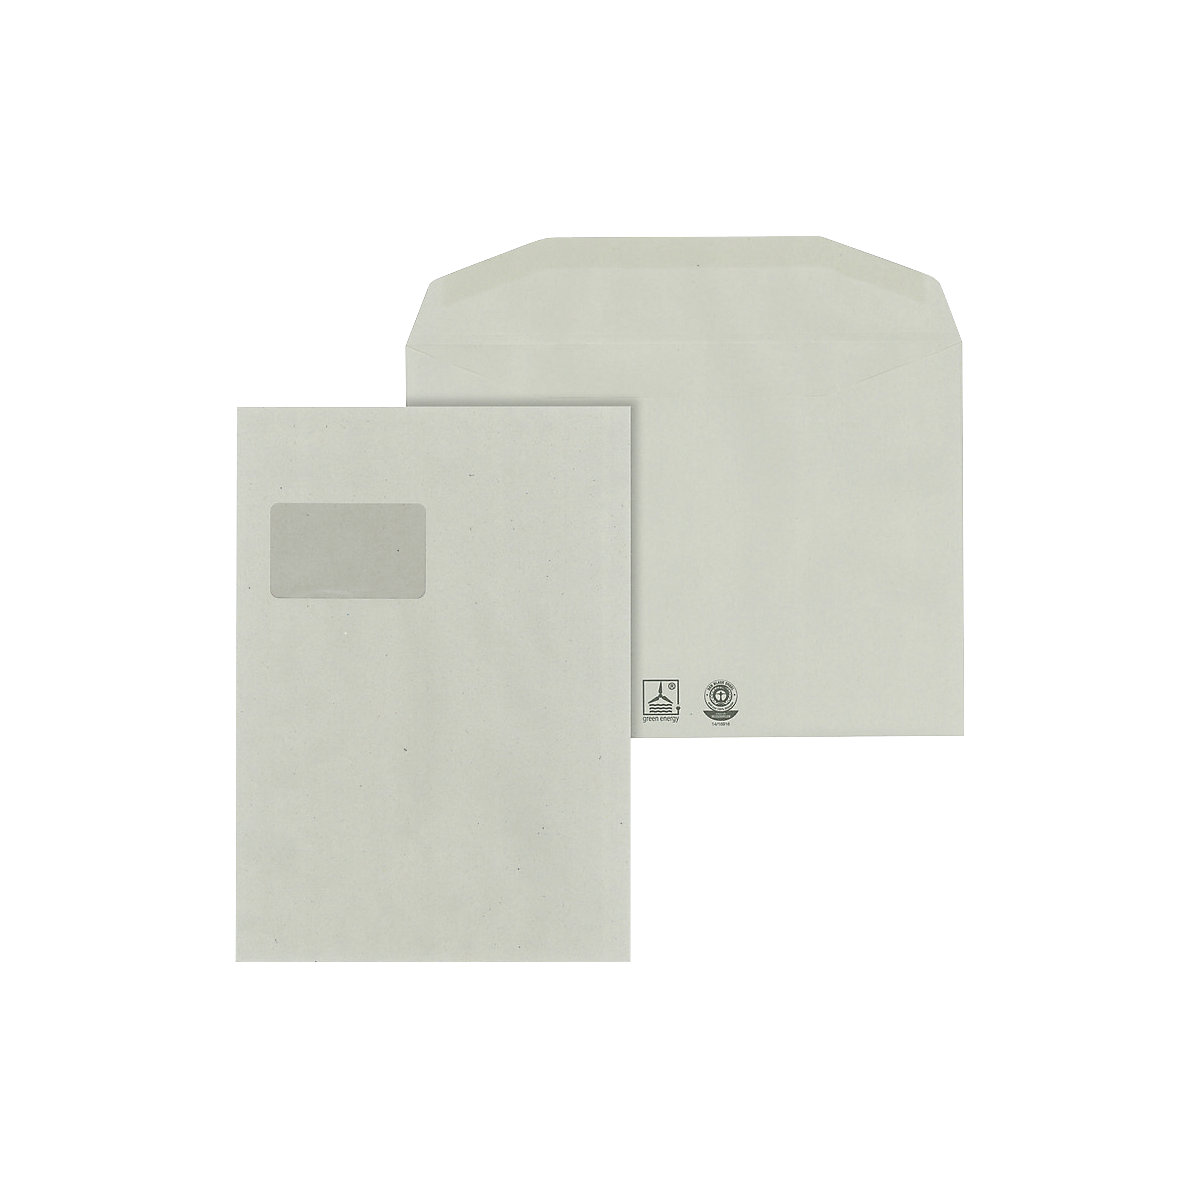 Buste – eurokraft basic, carta riciclata, con finestra, formato C4, conf. da 500 pz., a partire a 5 conf.-1